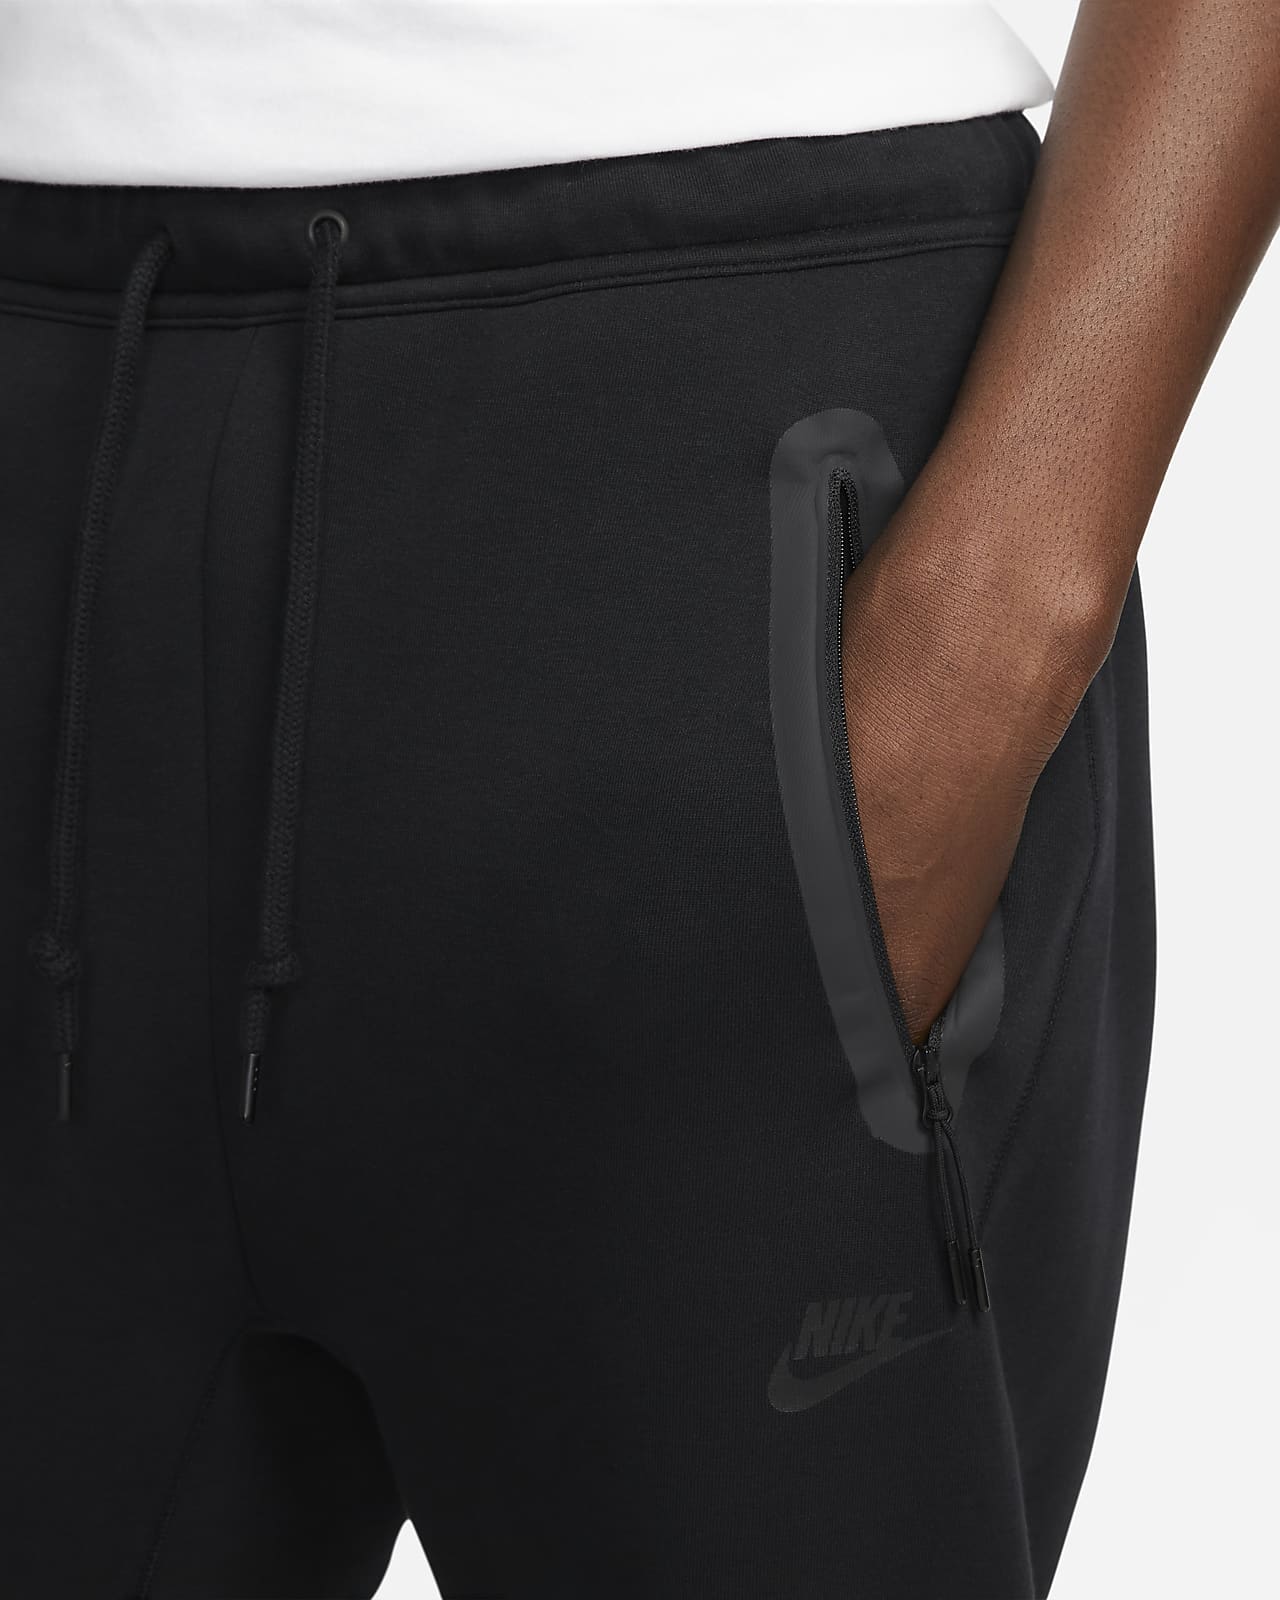 NIKE Nike Sportswear Tech Fleece Men's Joggers, Brown Men's Casual Trouser